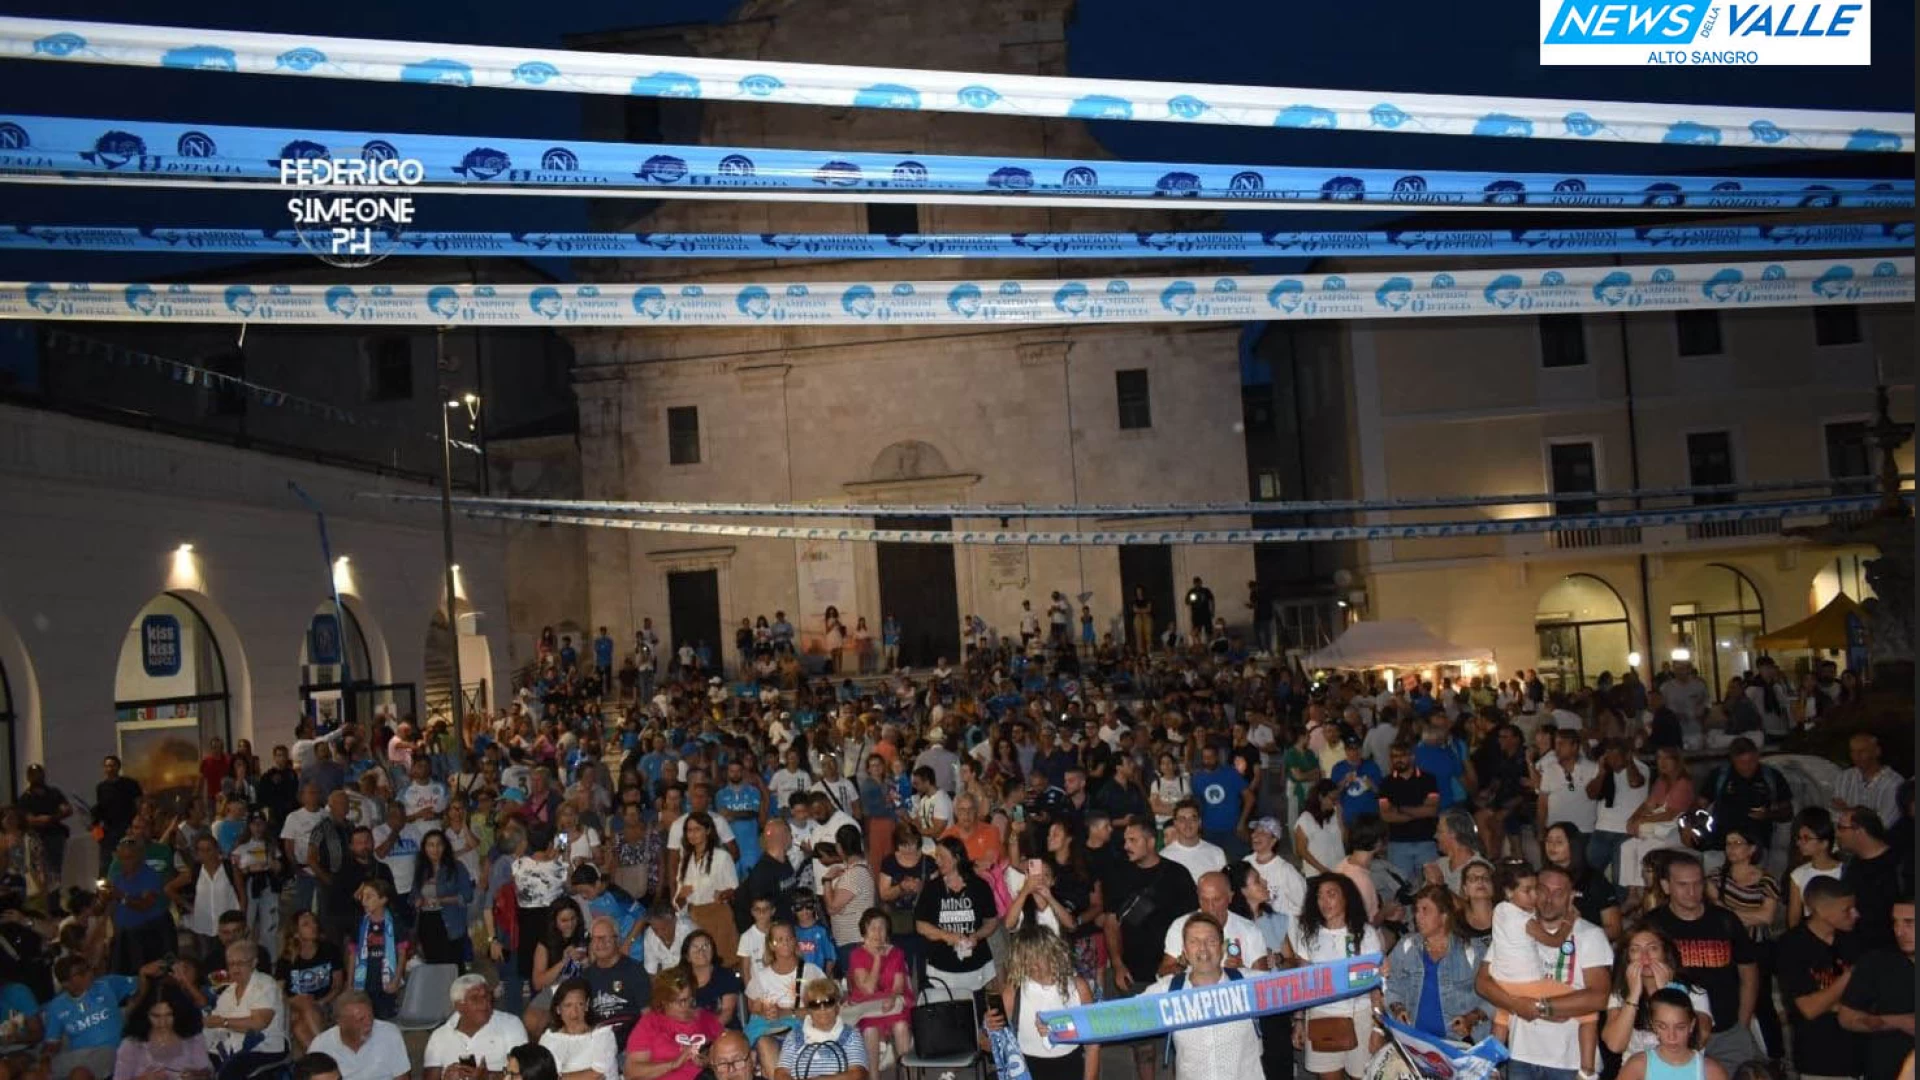 Una mega festa in piazza che ha colorato d’azzurro la città. Migliaia le presenze per l’evento promosso dal Club Napoli Castel Di Sangro. “Notte da sogno”: Guarda il servizio.